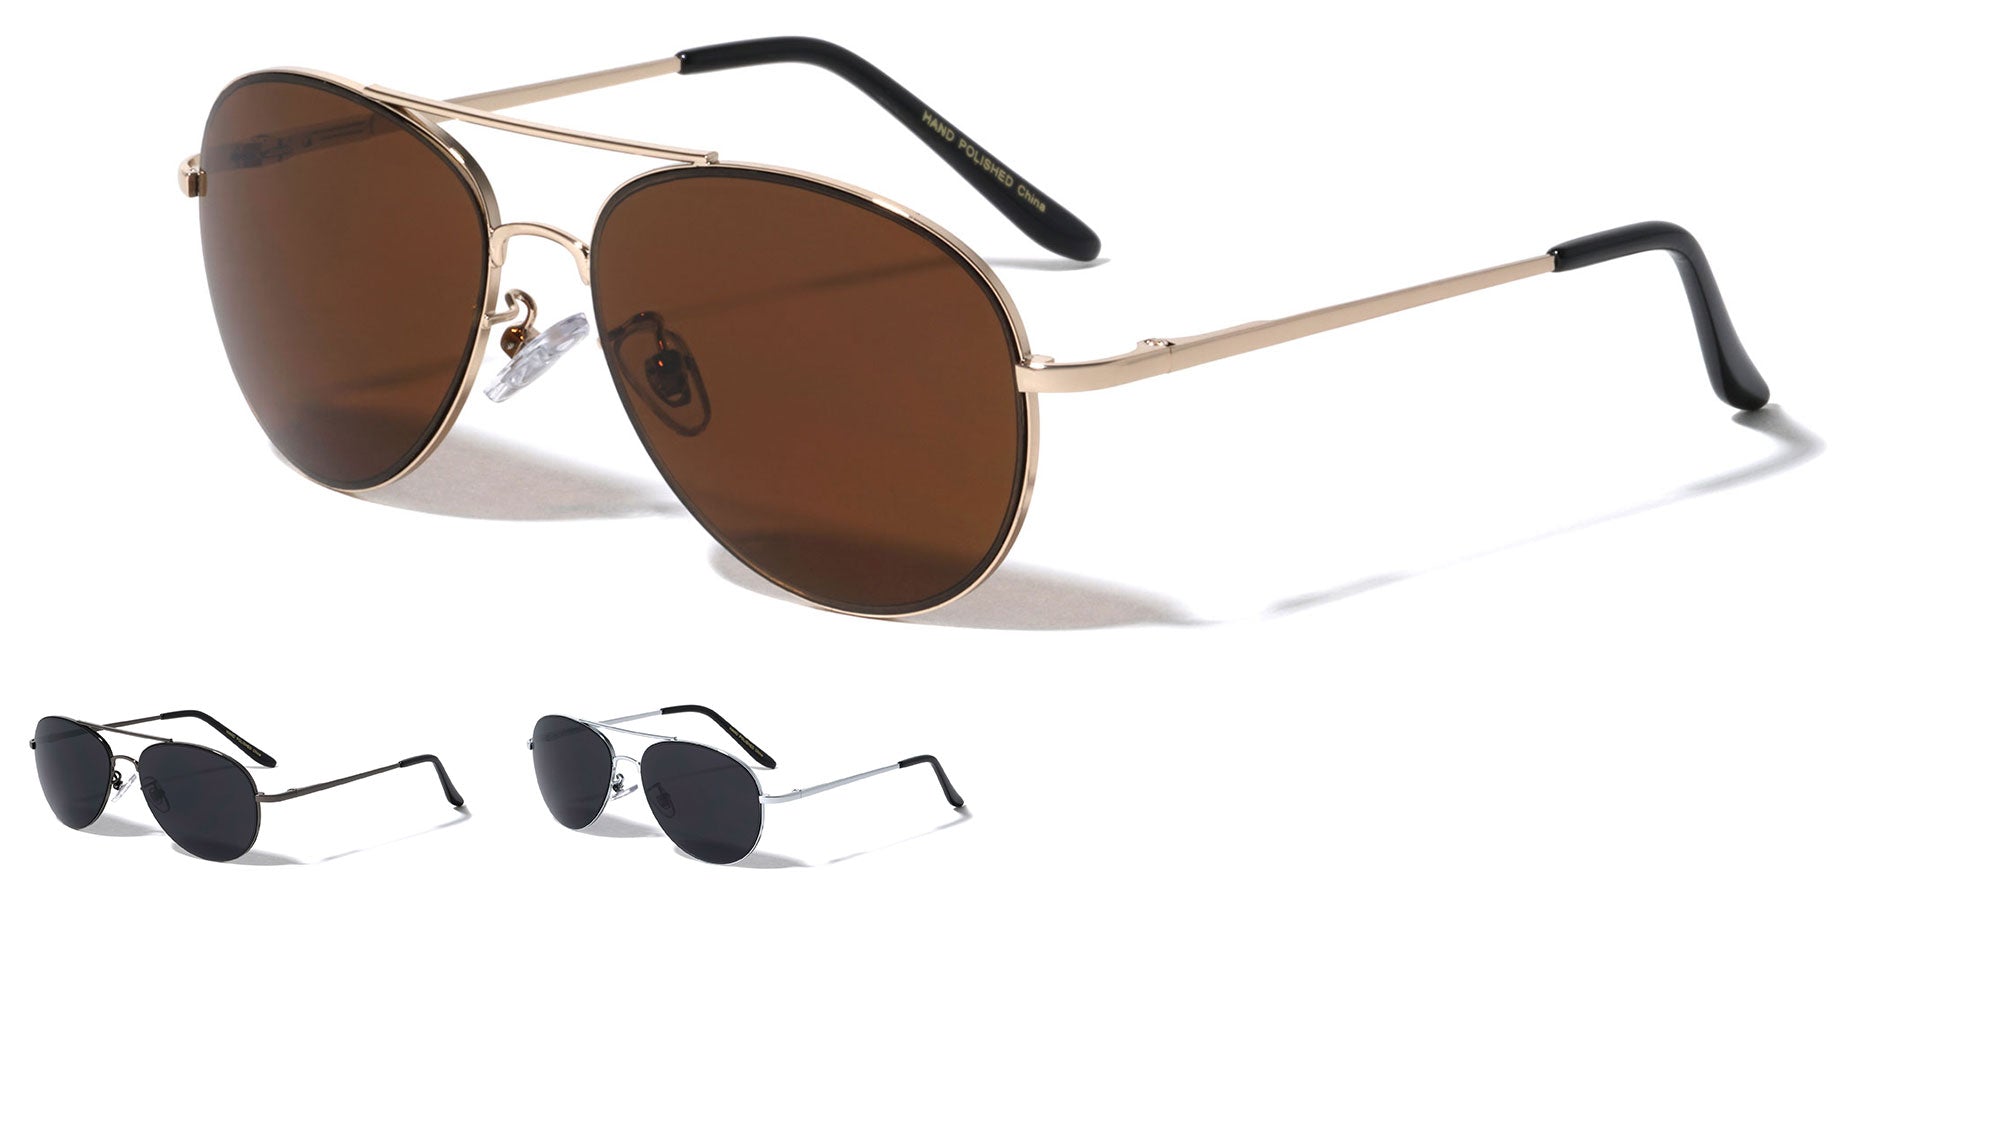 Discover 281+ extra dark aviator sunglasses